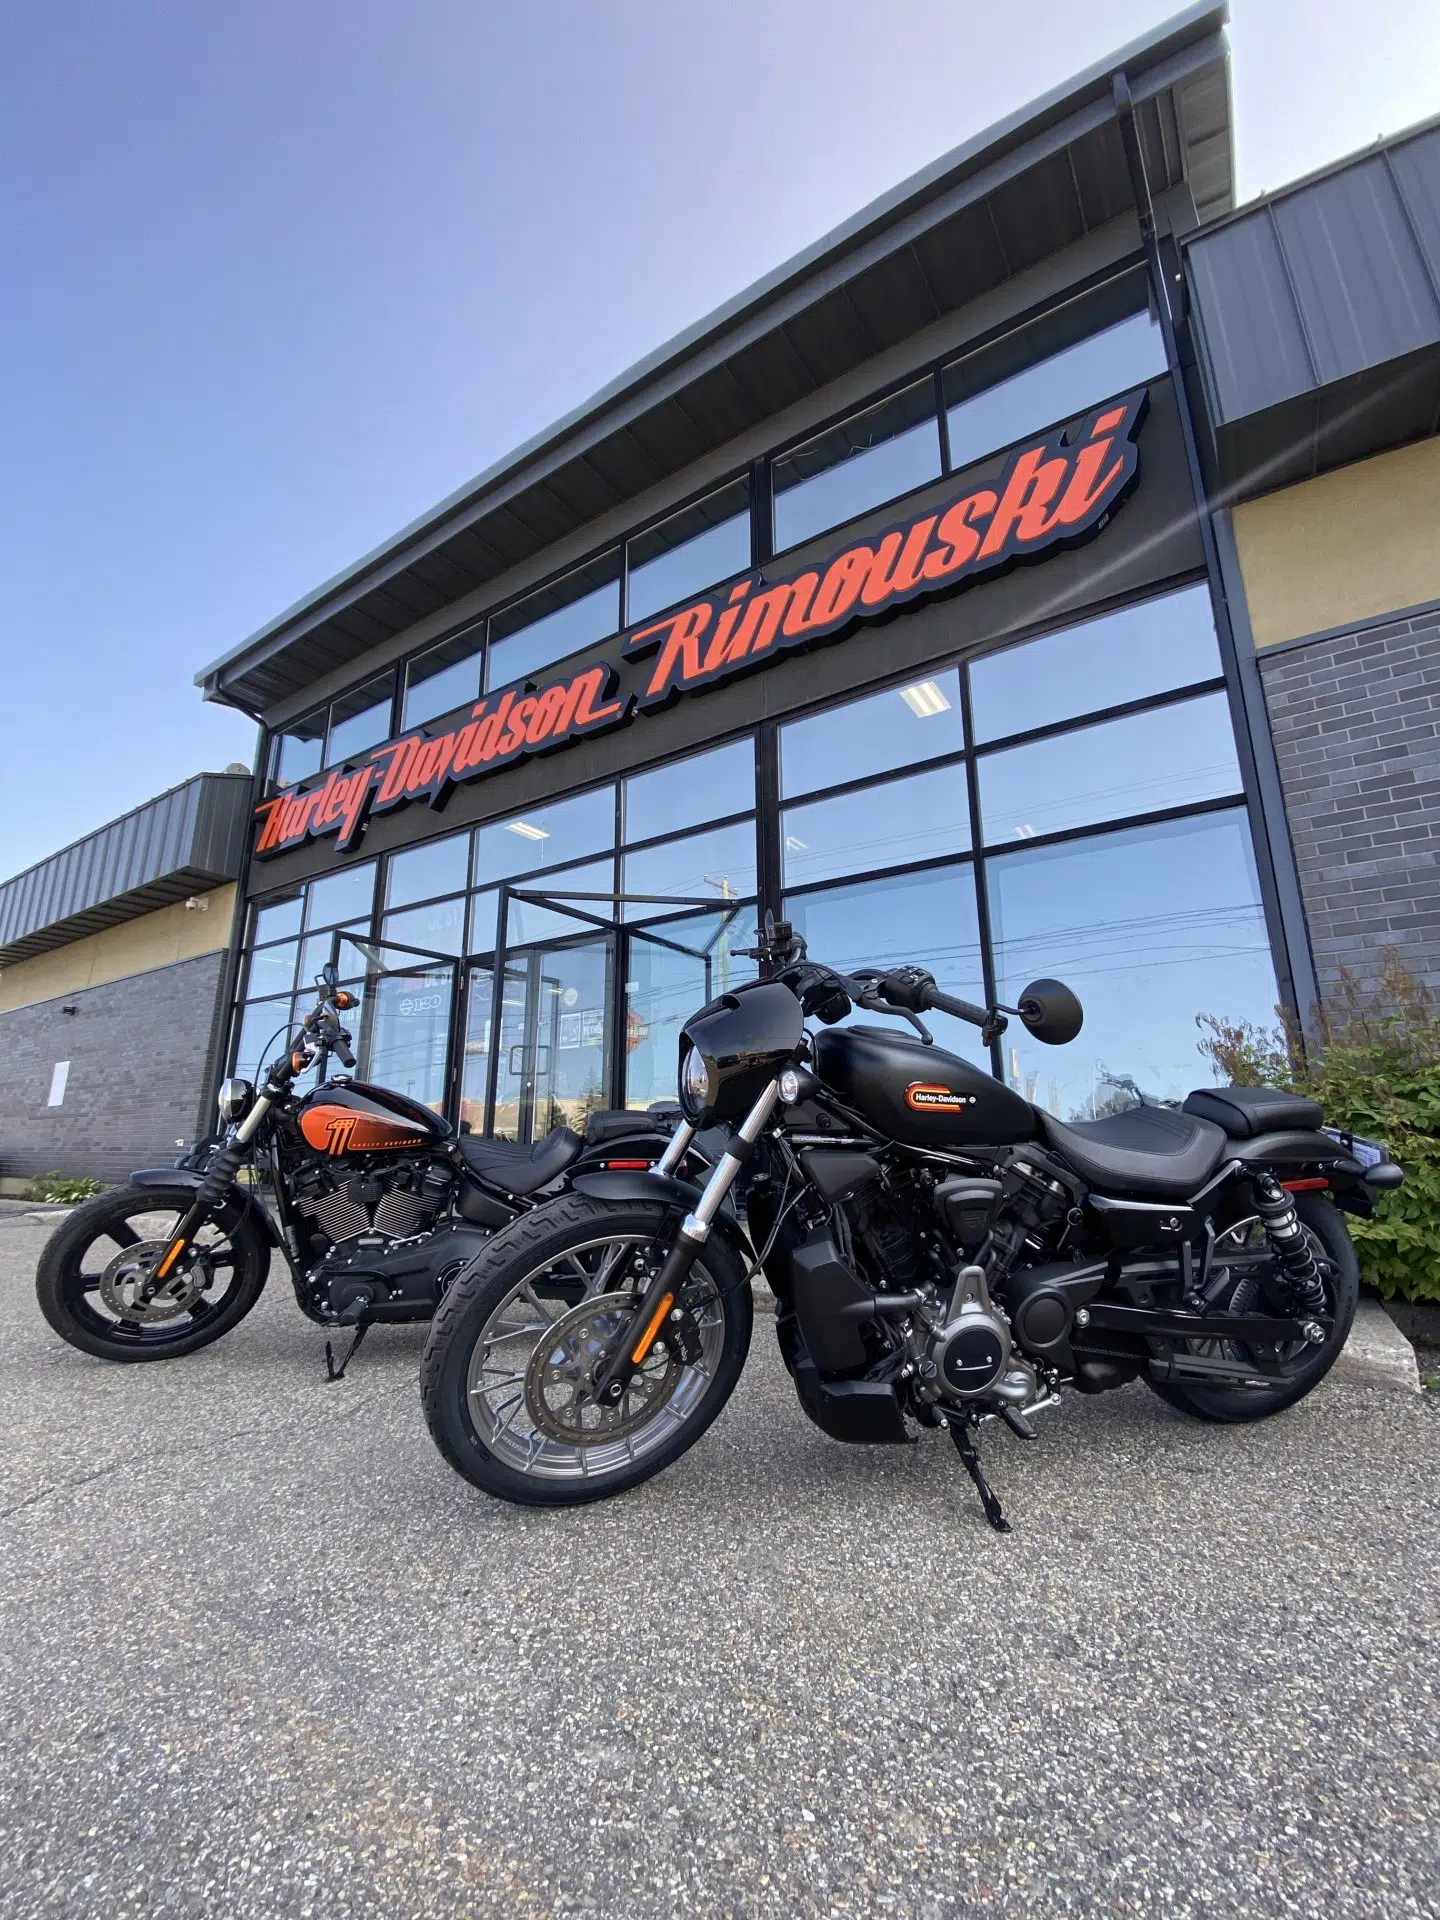 Harley-Davidson Rimouski nous a gracieusement prêté des motos!